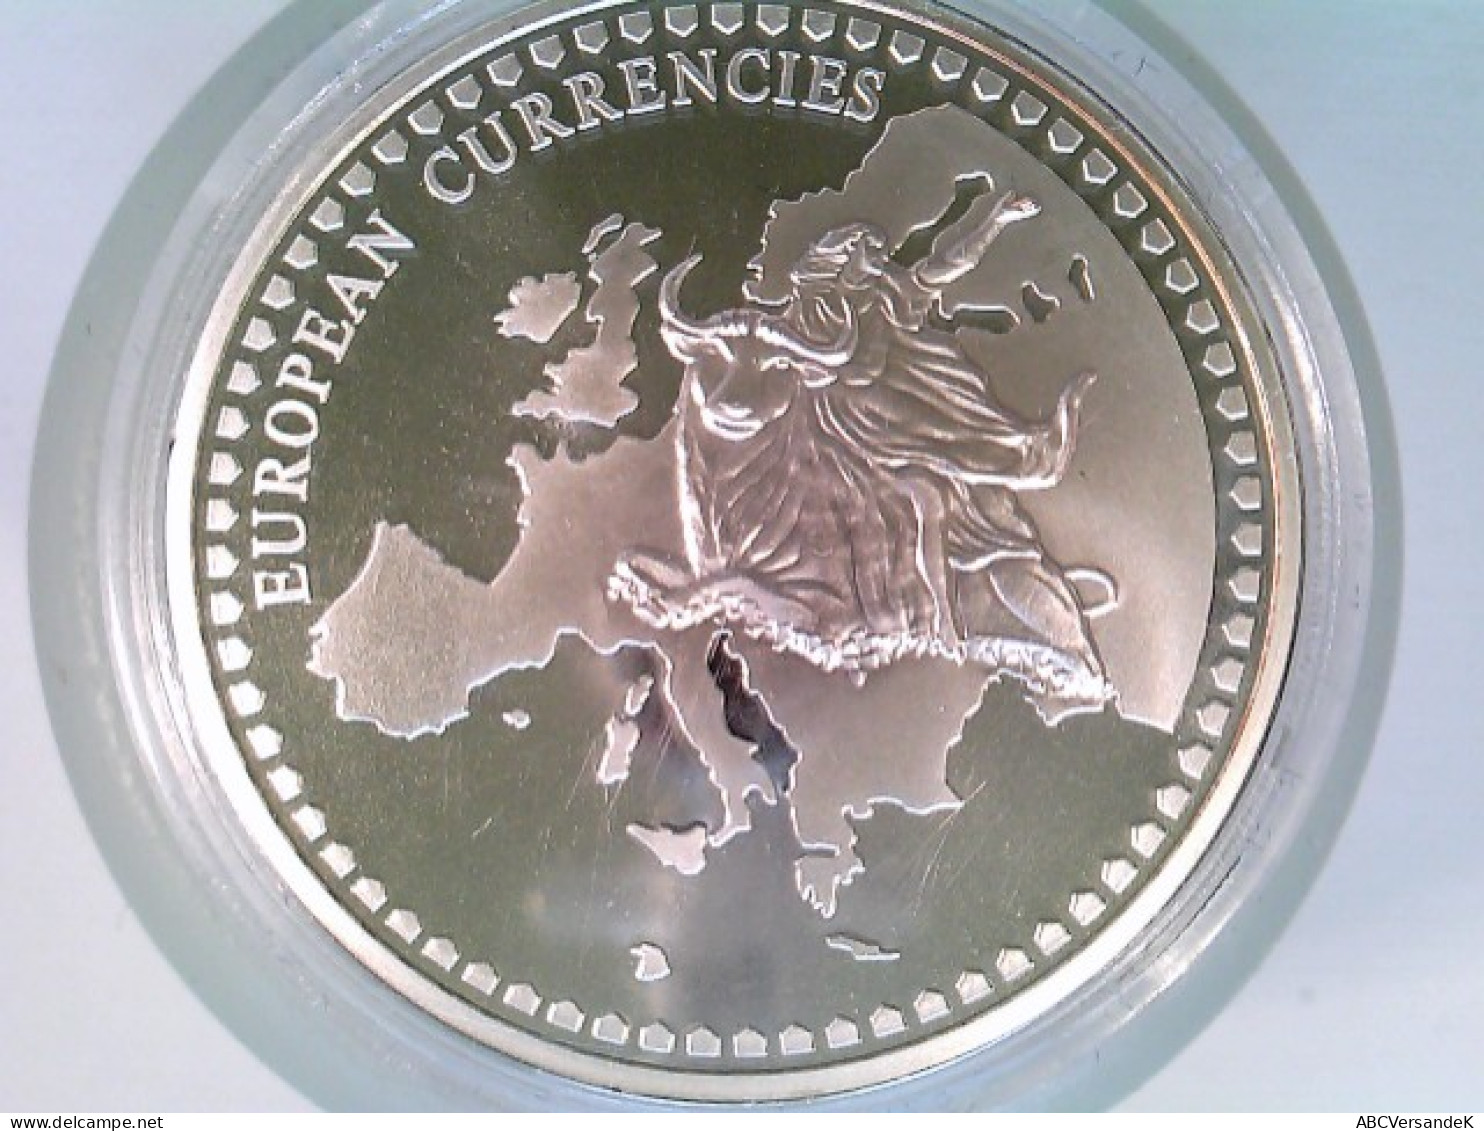 Münze/Medaille, Inlay-Prägung Österreich, Sammlermünze 1996, CU Versilbert Mit Vergoldetem Inlay - Numismática